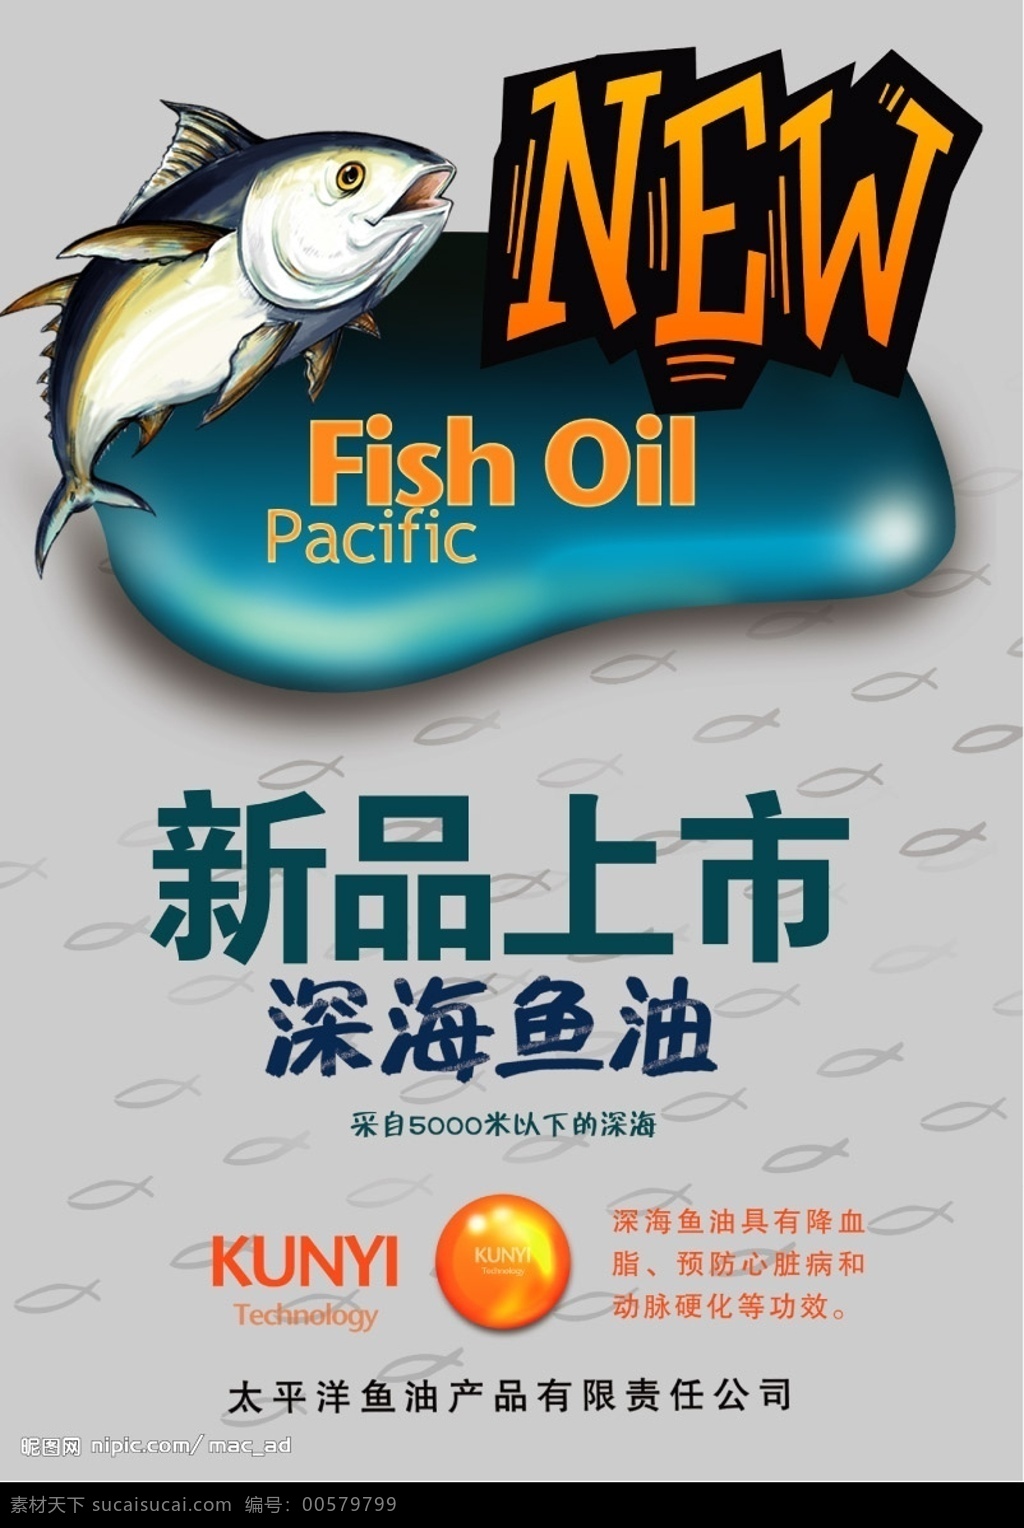 深海鱼油 新品上市 海报 广告设计模板 国内广告设计 源文件库